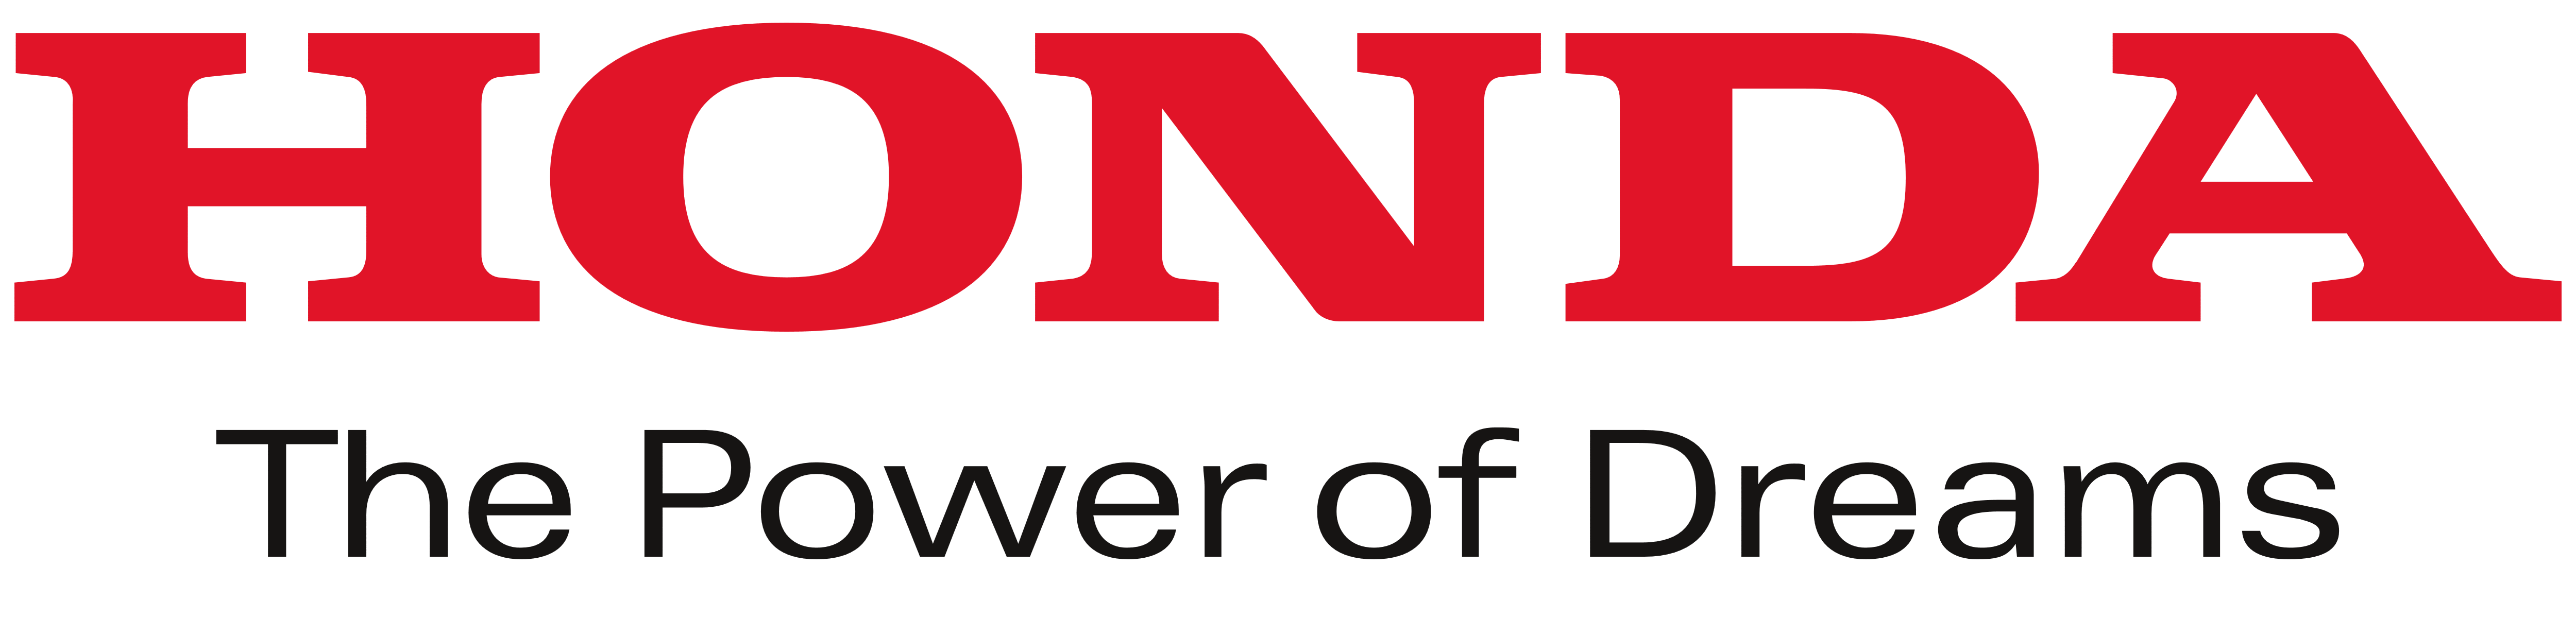 Honda – Logos Download